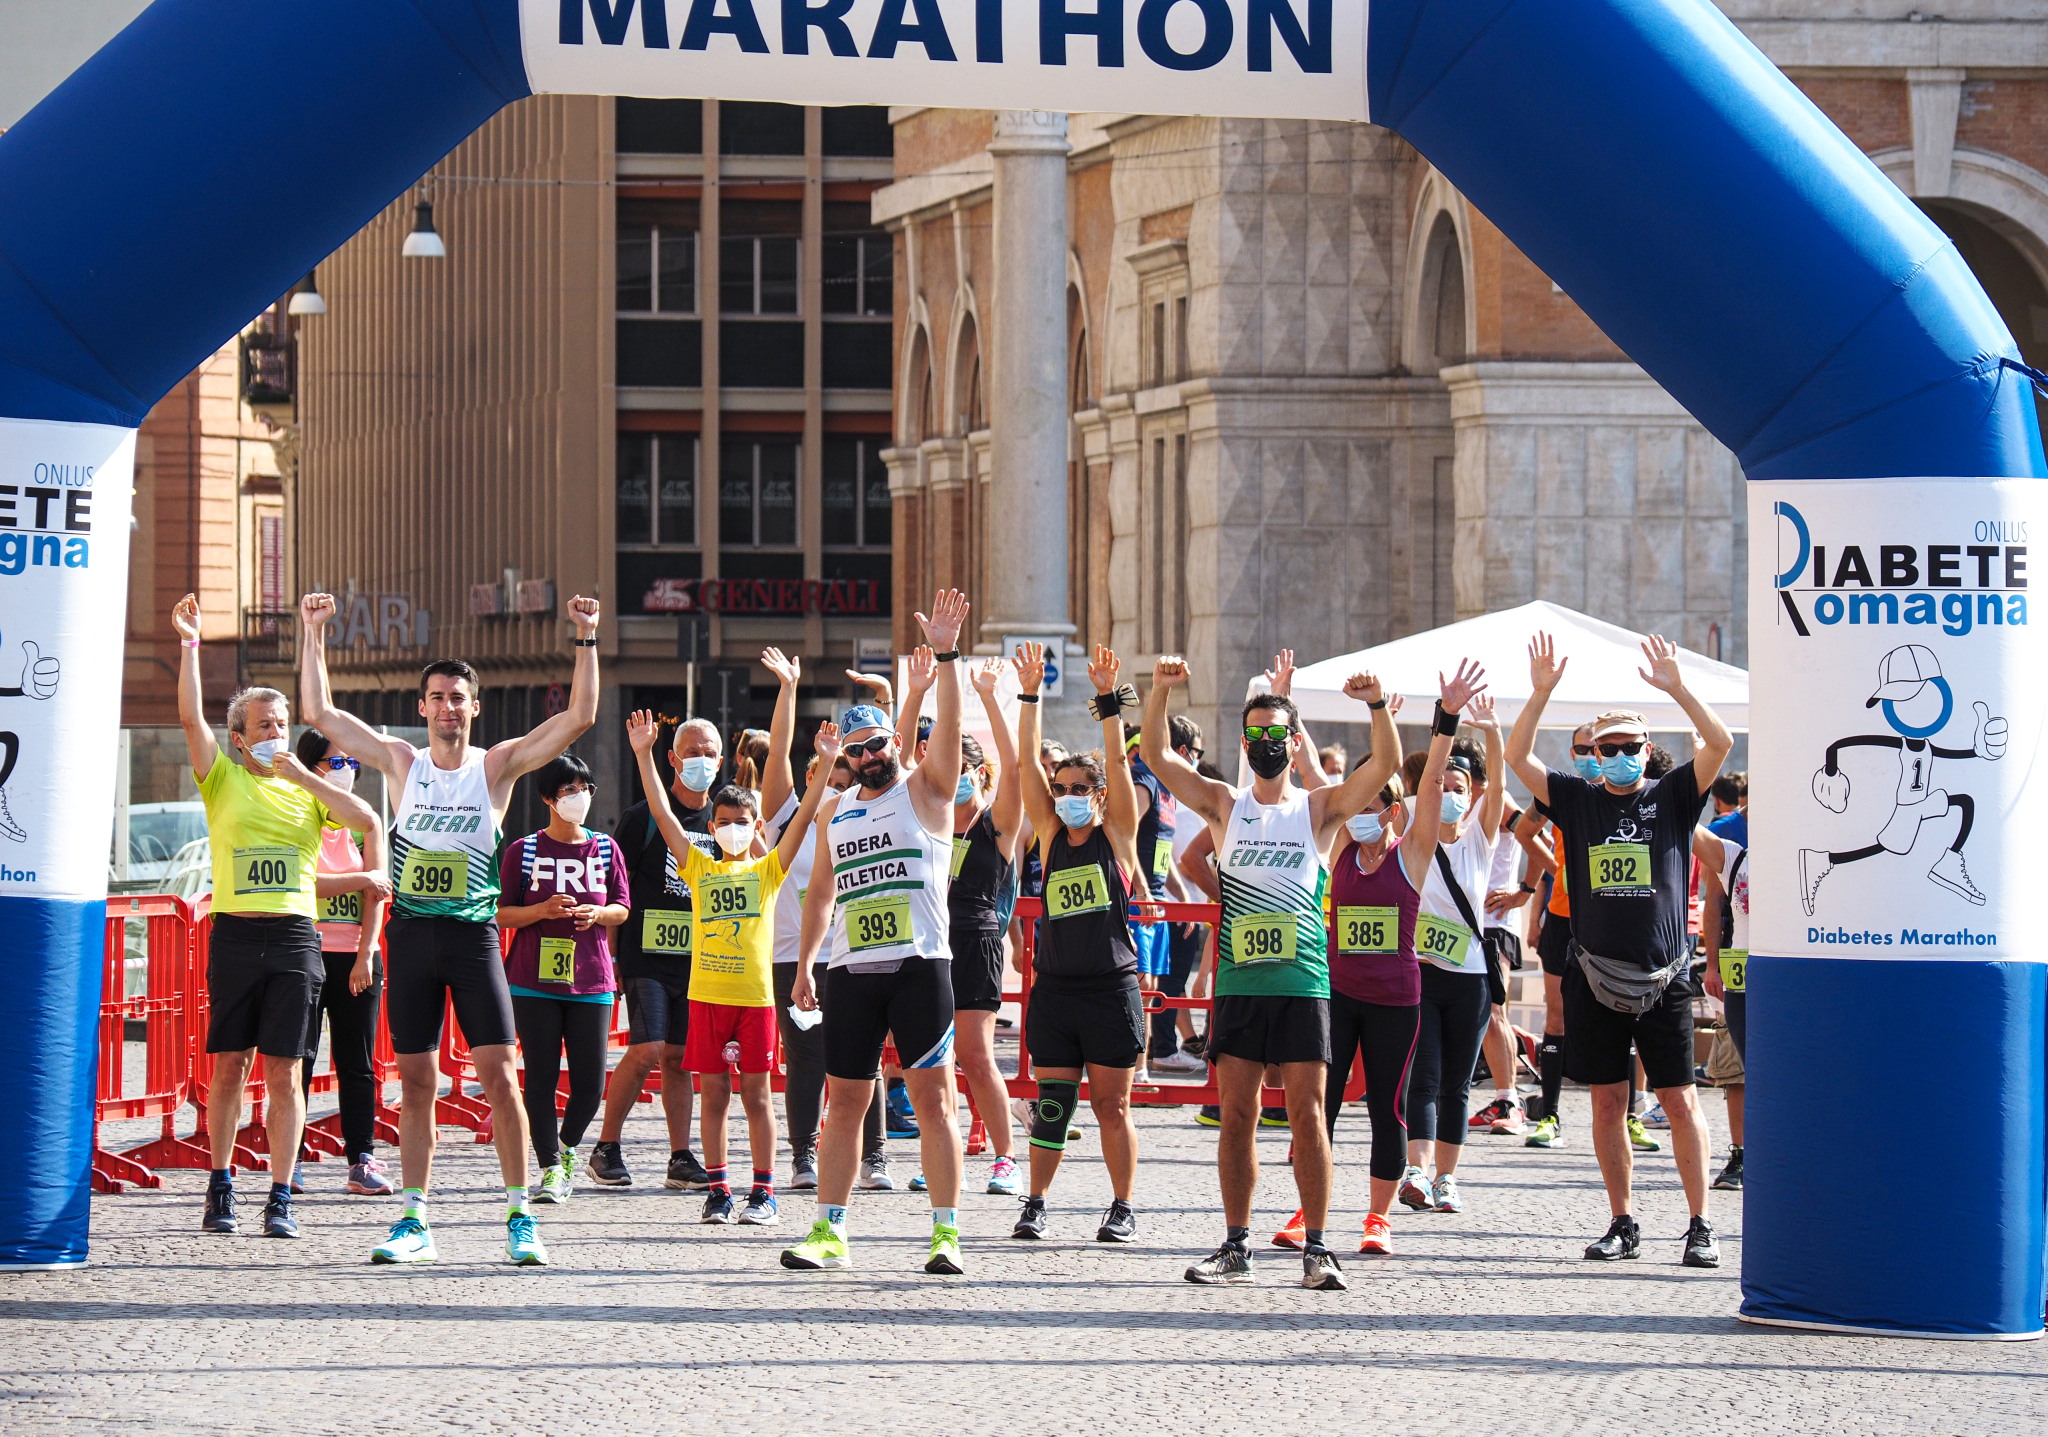 Il 10 Aprile Torna Diabetes Marathon, Per I Non Competitivi Iscritti Entro Il 6 Aprile Pettorale E Chip Che Monitora La Prestazione Per Motivare Ad Uno Stile Di Vita Sano